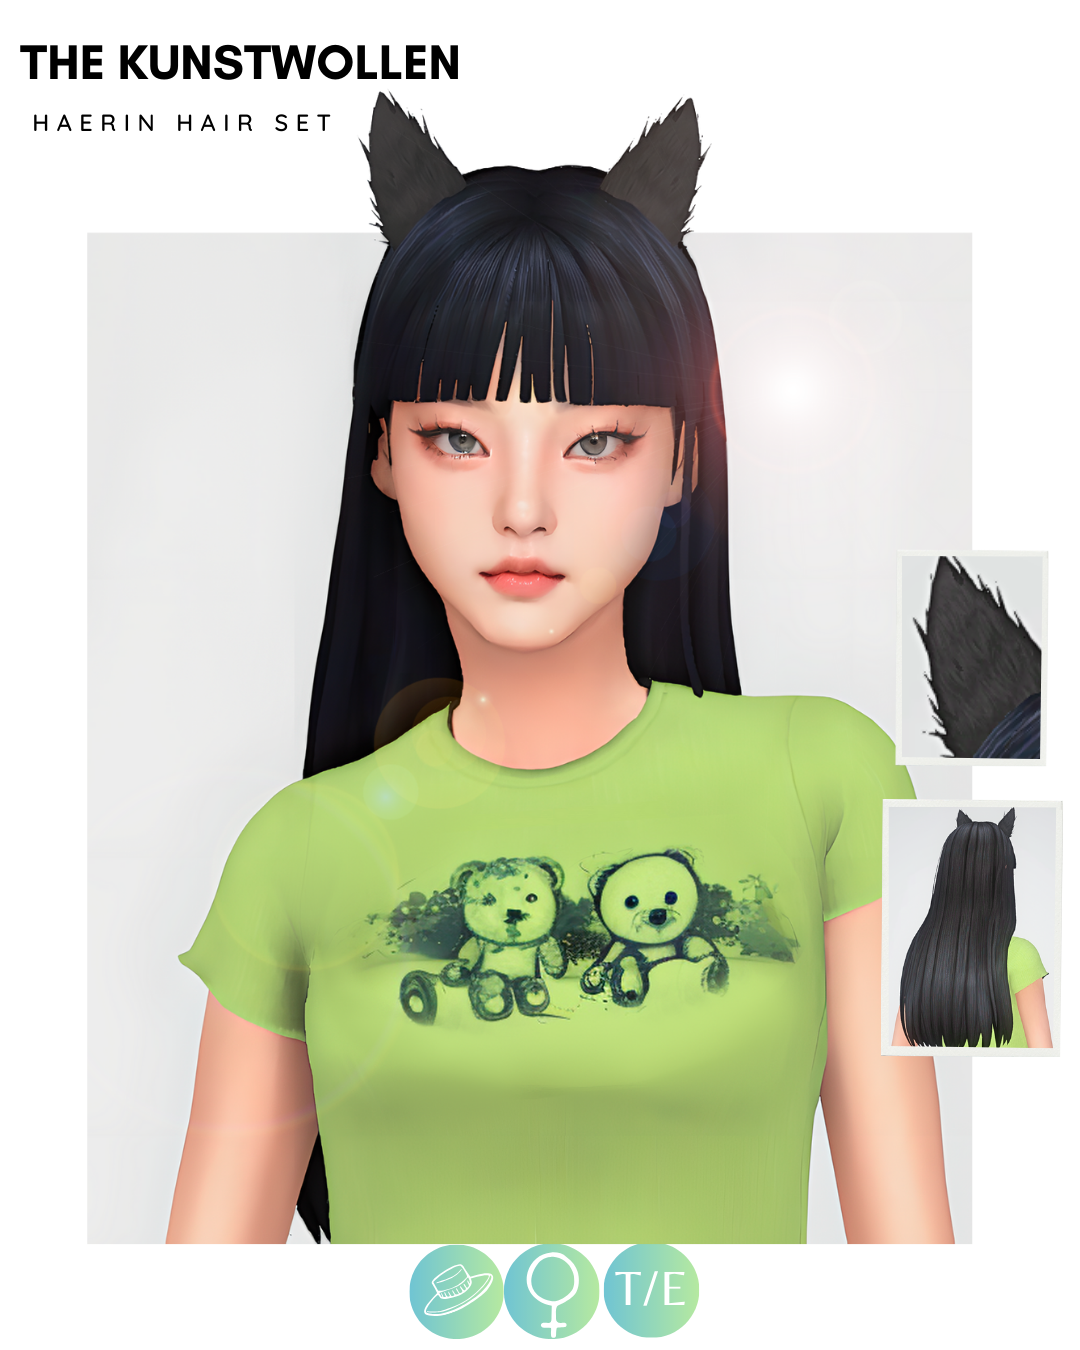 Haerin hair set - Screenshots - The Sims 4 Create a Sim - CurseForge